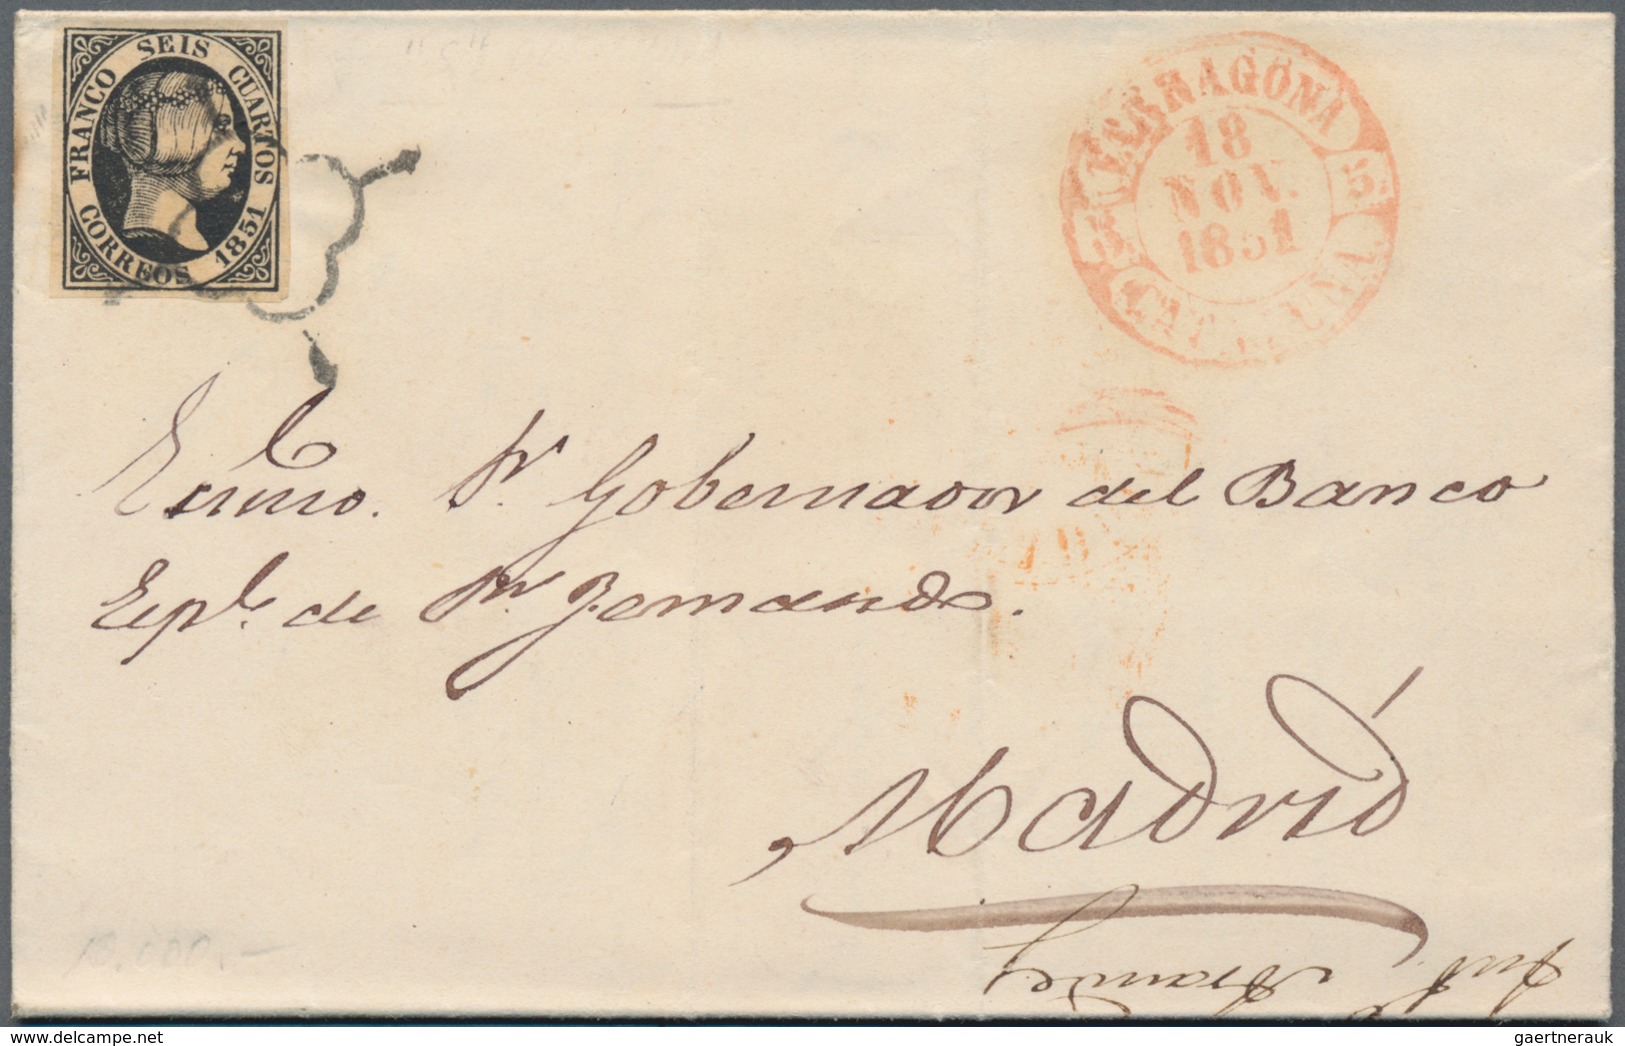 Europa: ab 1870, schöner Briefposten von ca. 180 Belegen "Klassik - Semiklassik", dabei gute Schweiz